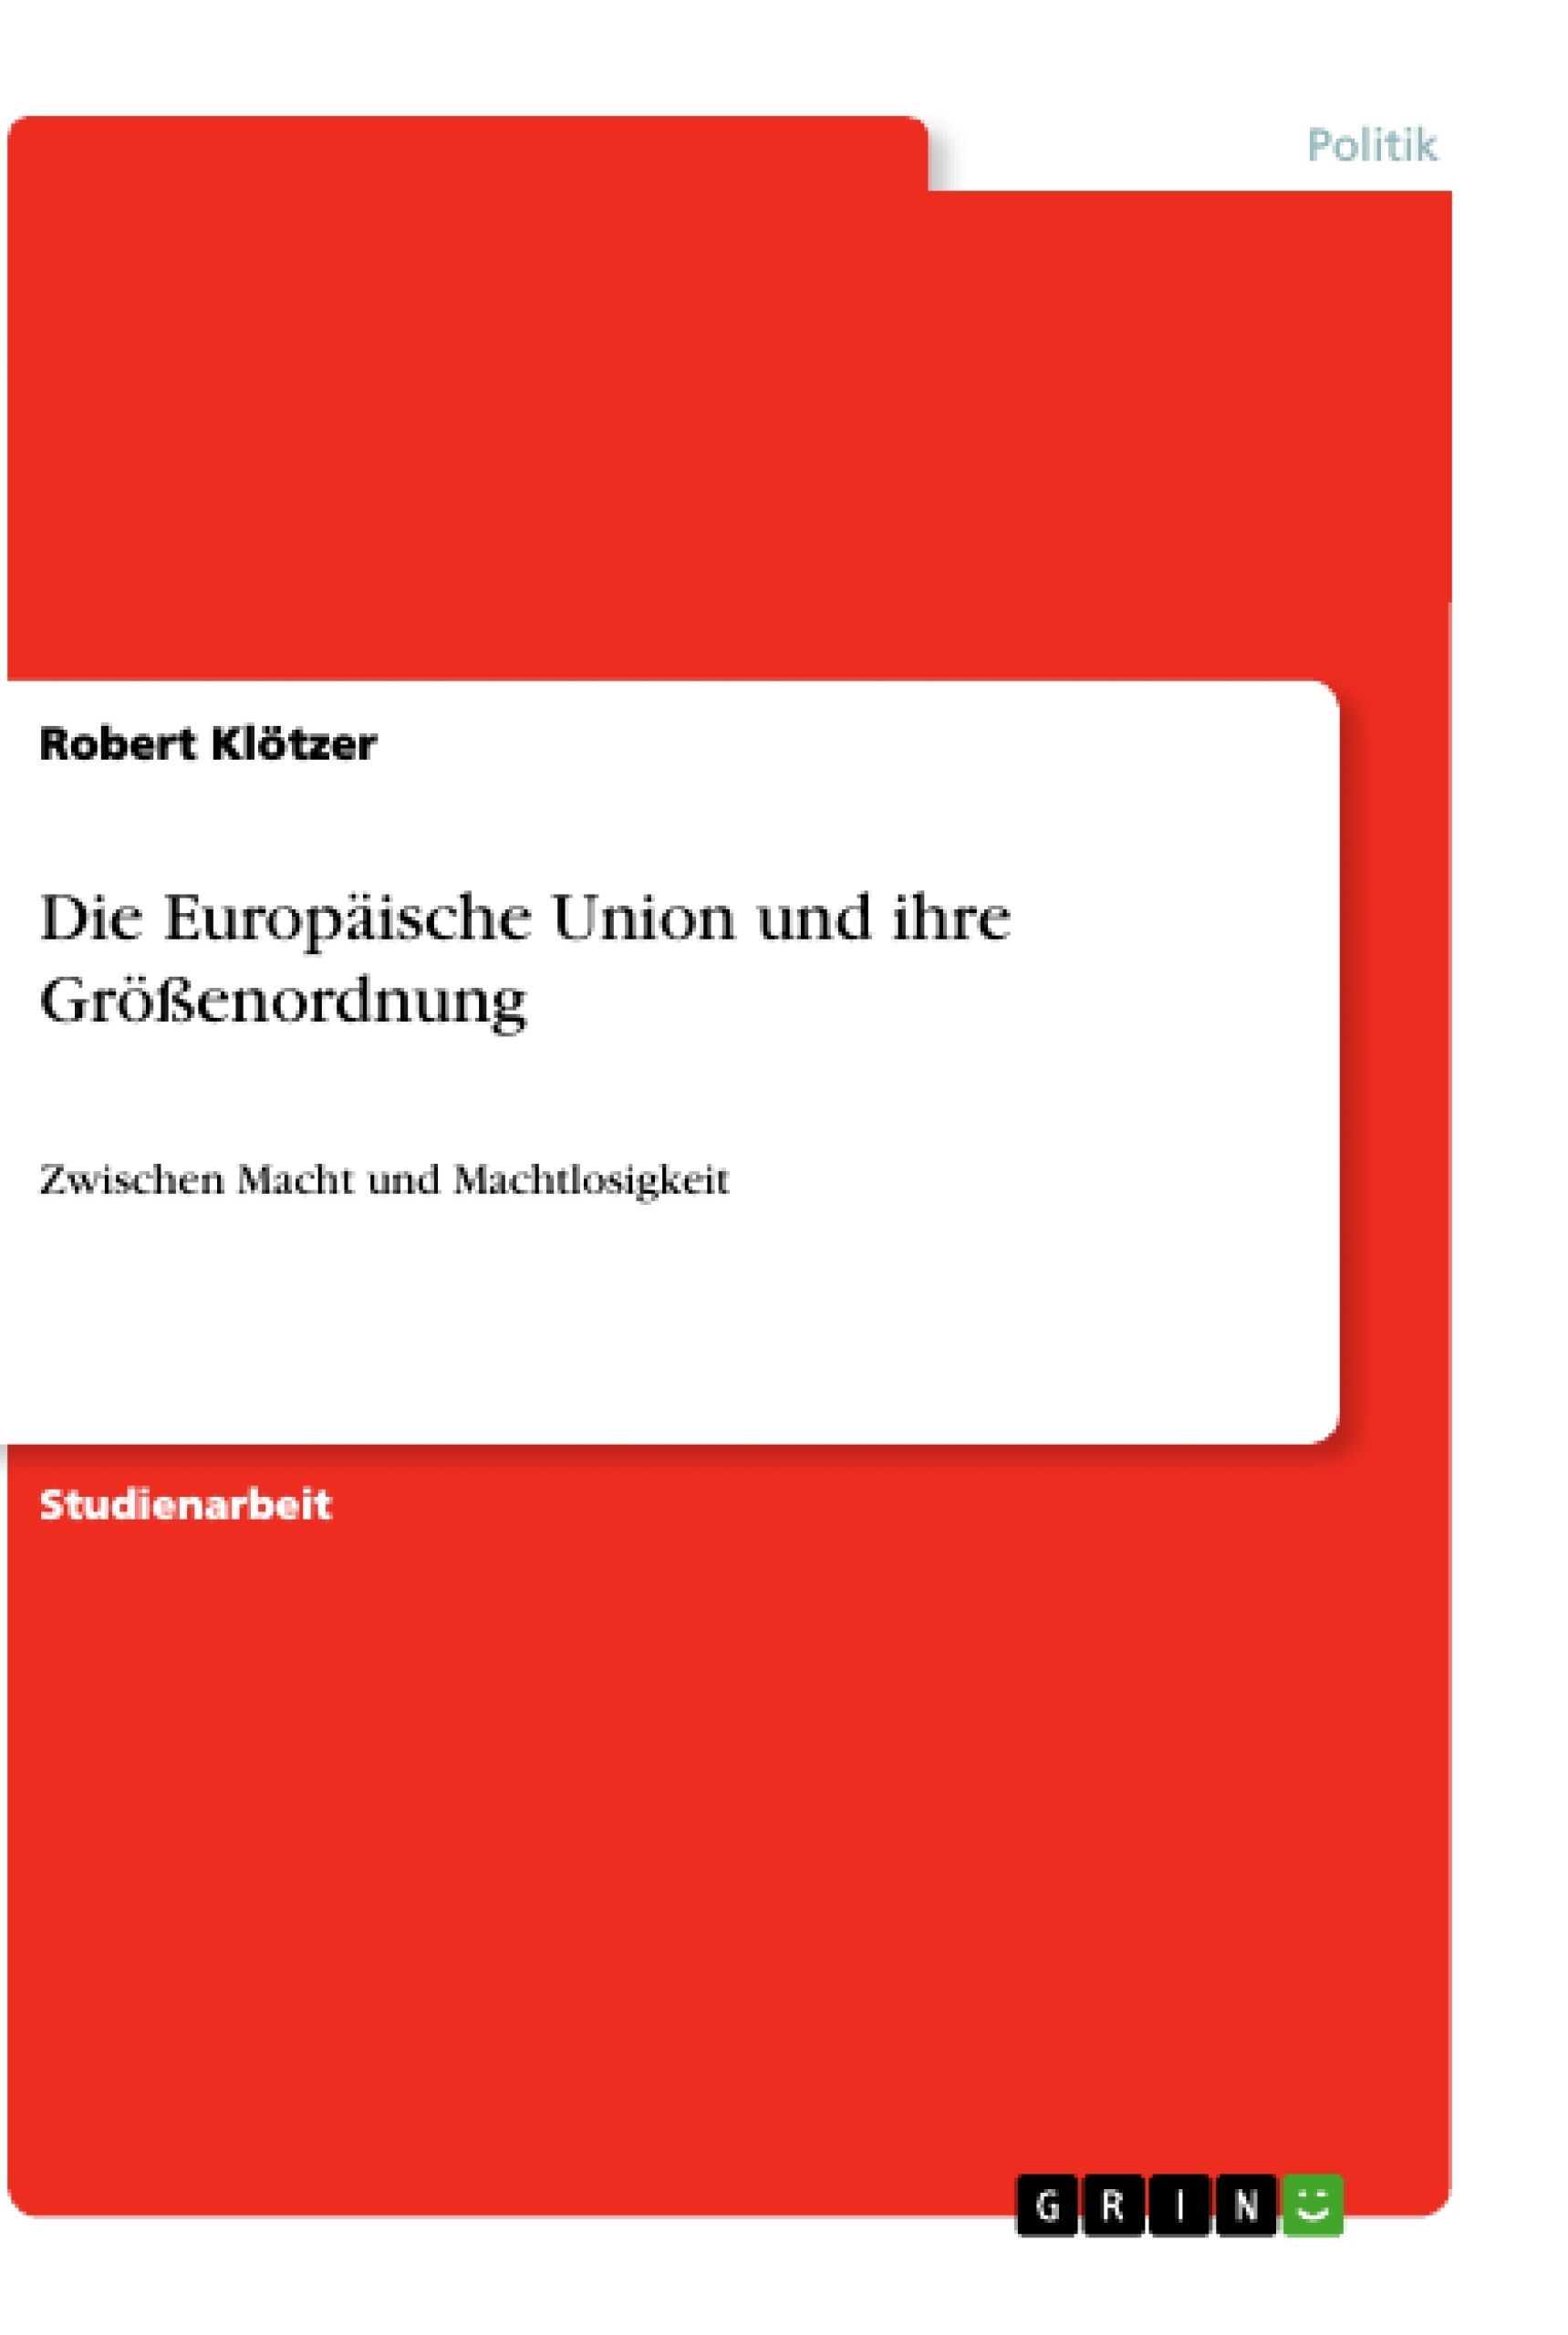 Título: Die Europäische Union und ihre Größenordnung